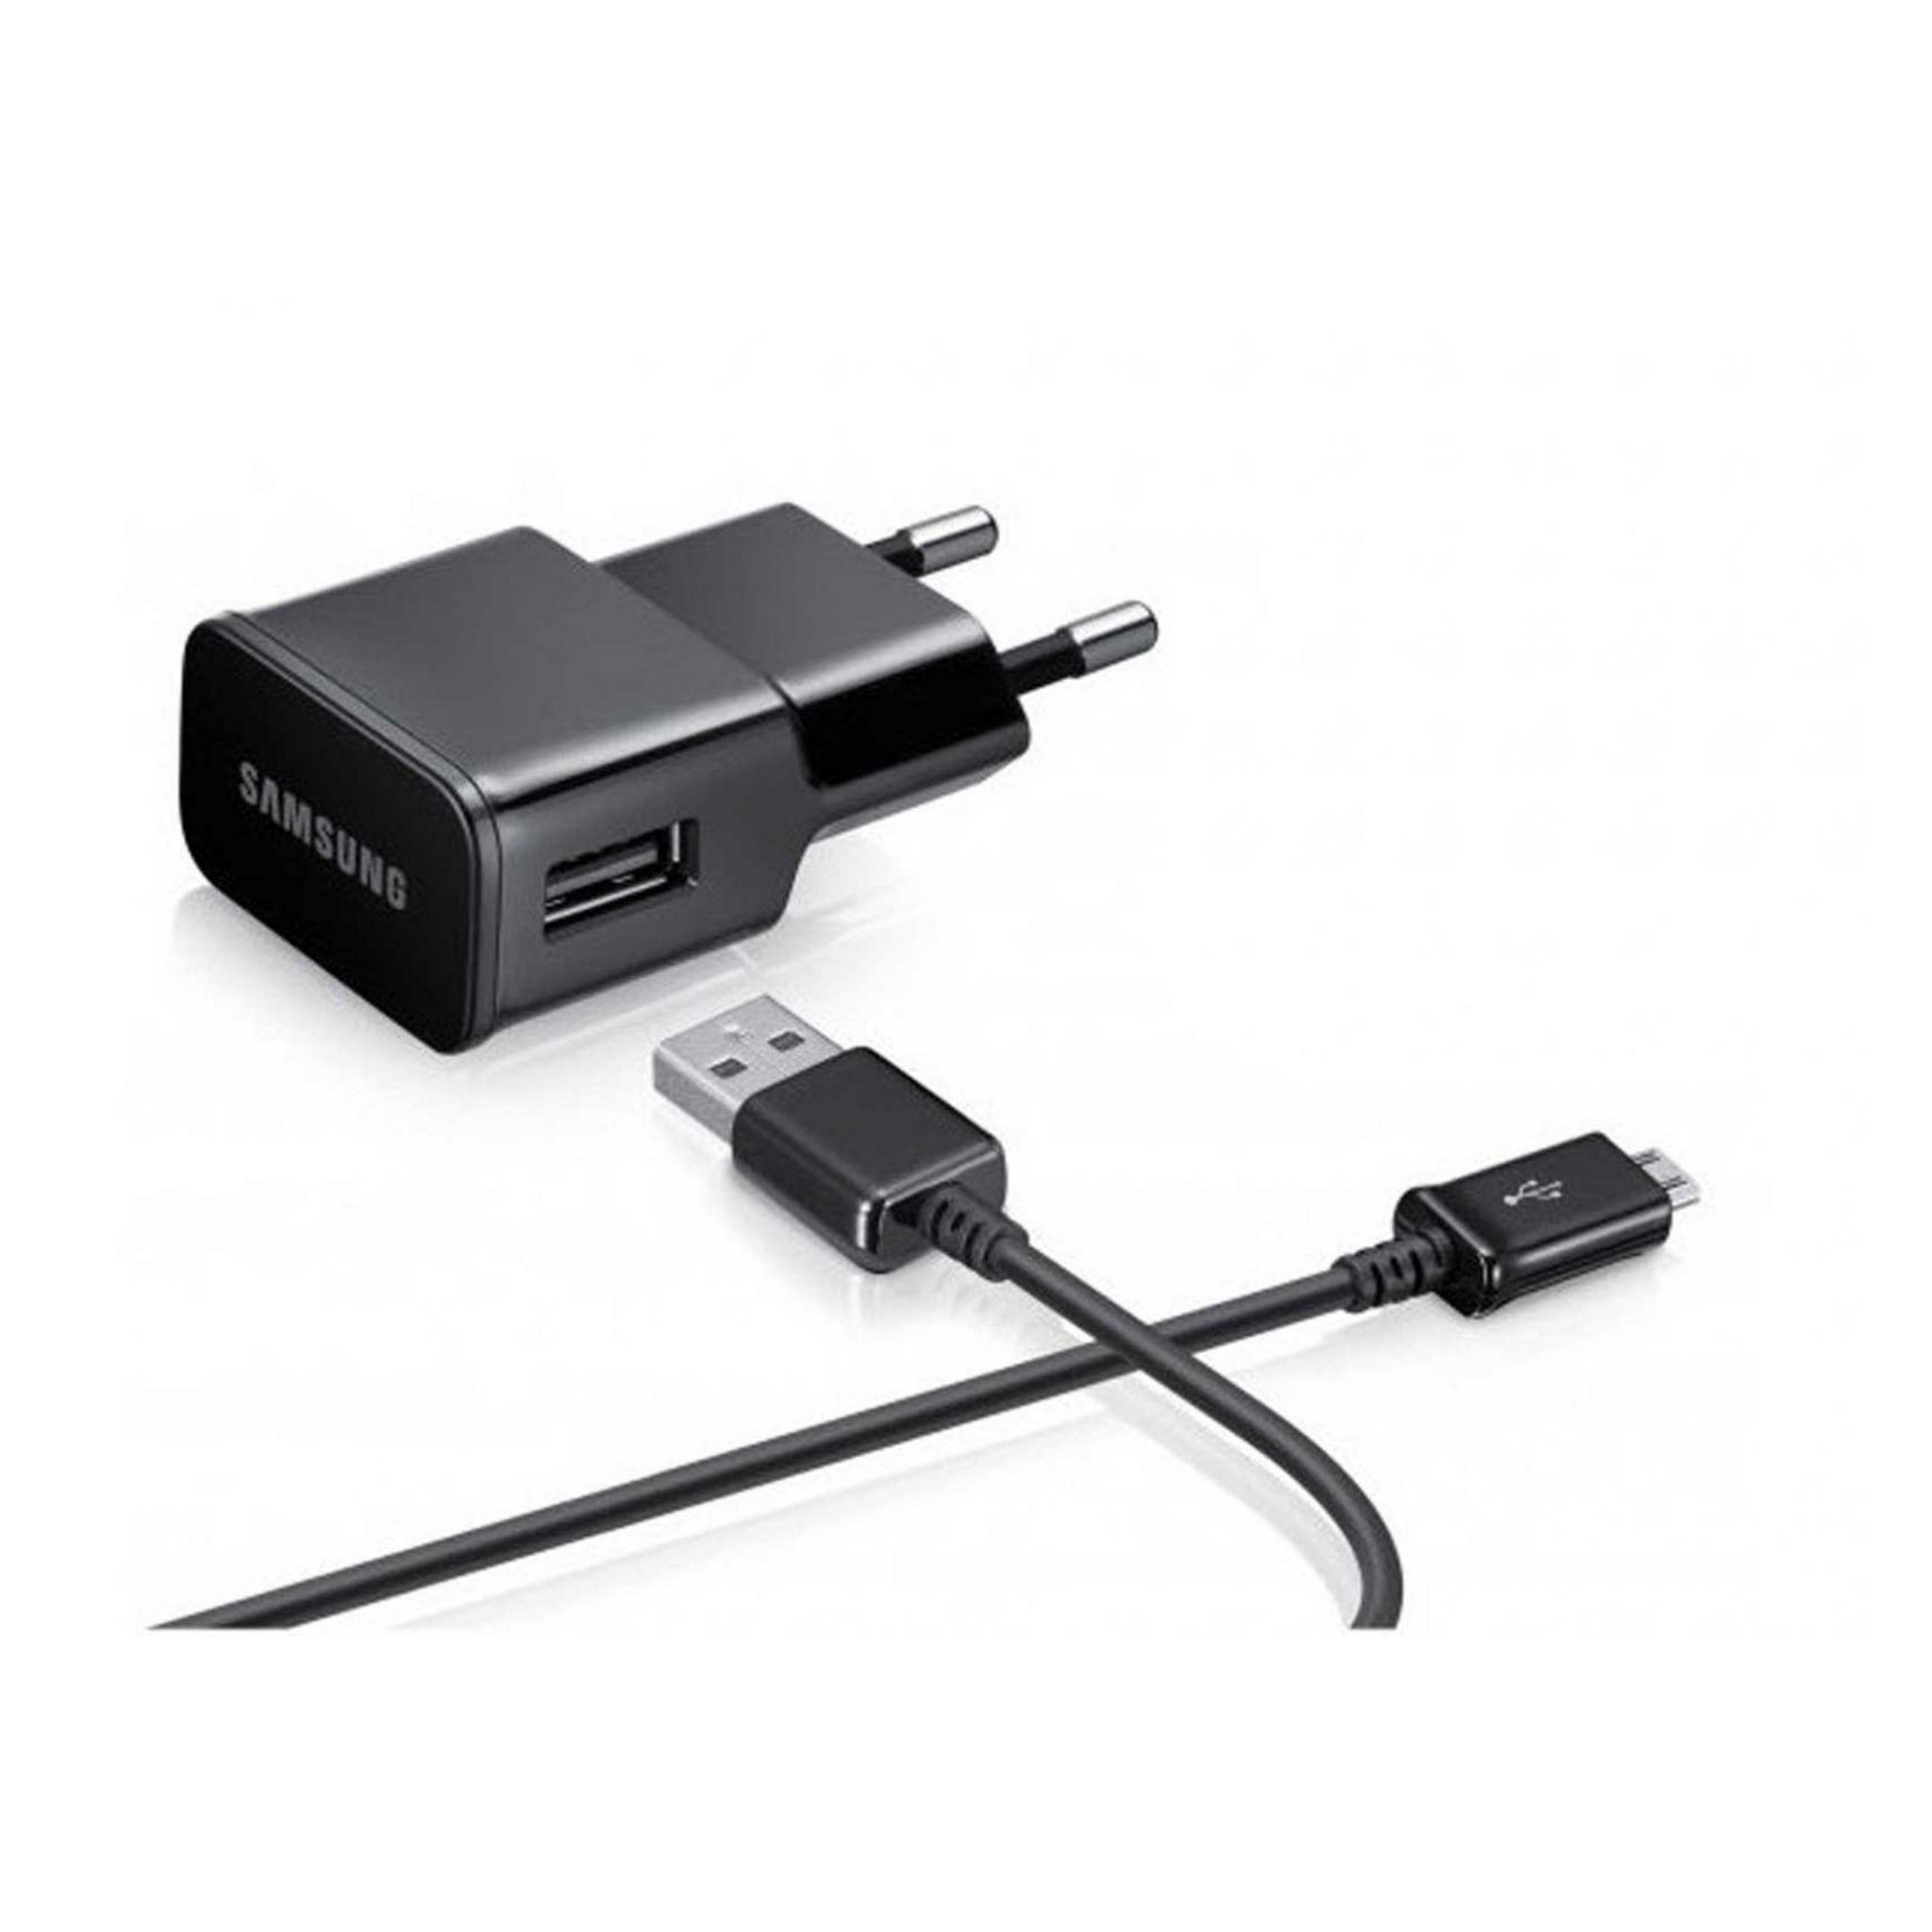 Chargeur pour téléphone mobile Amahousse Adaptateur Chargeur secteur pour  iPhone prise USB Blanc 5V 1A